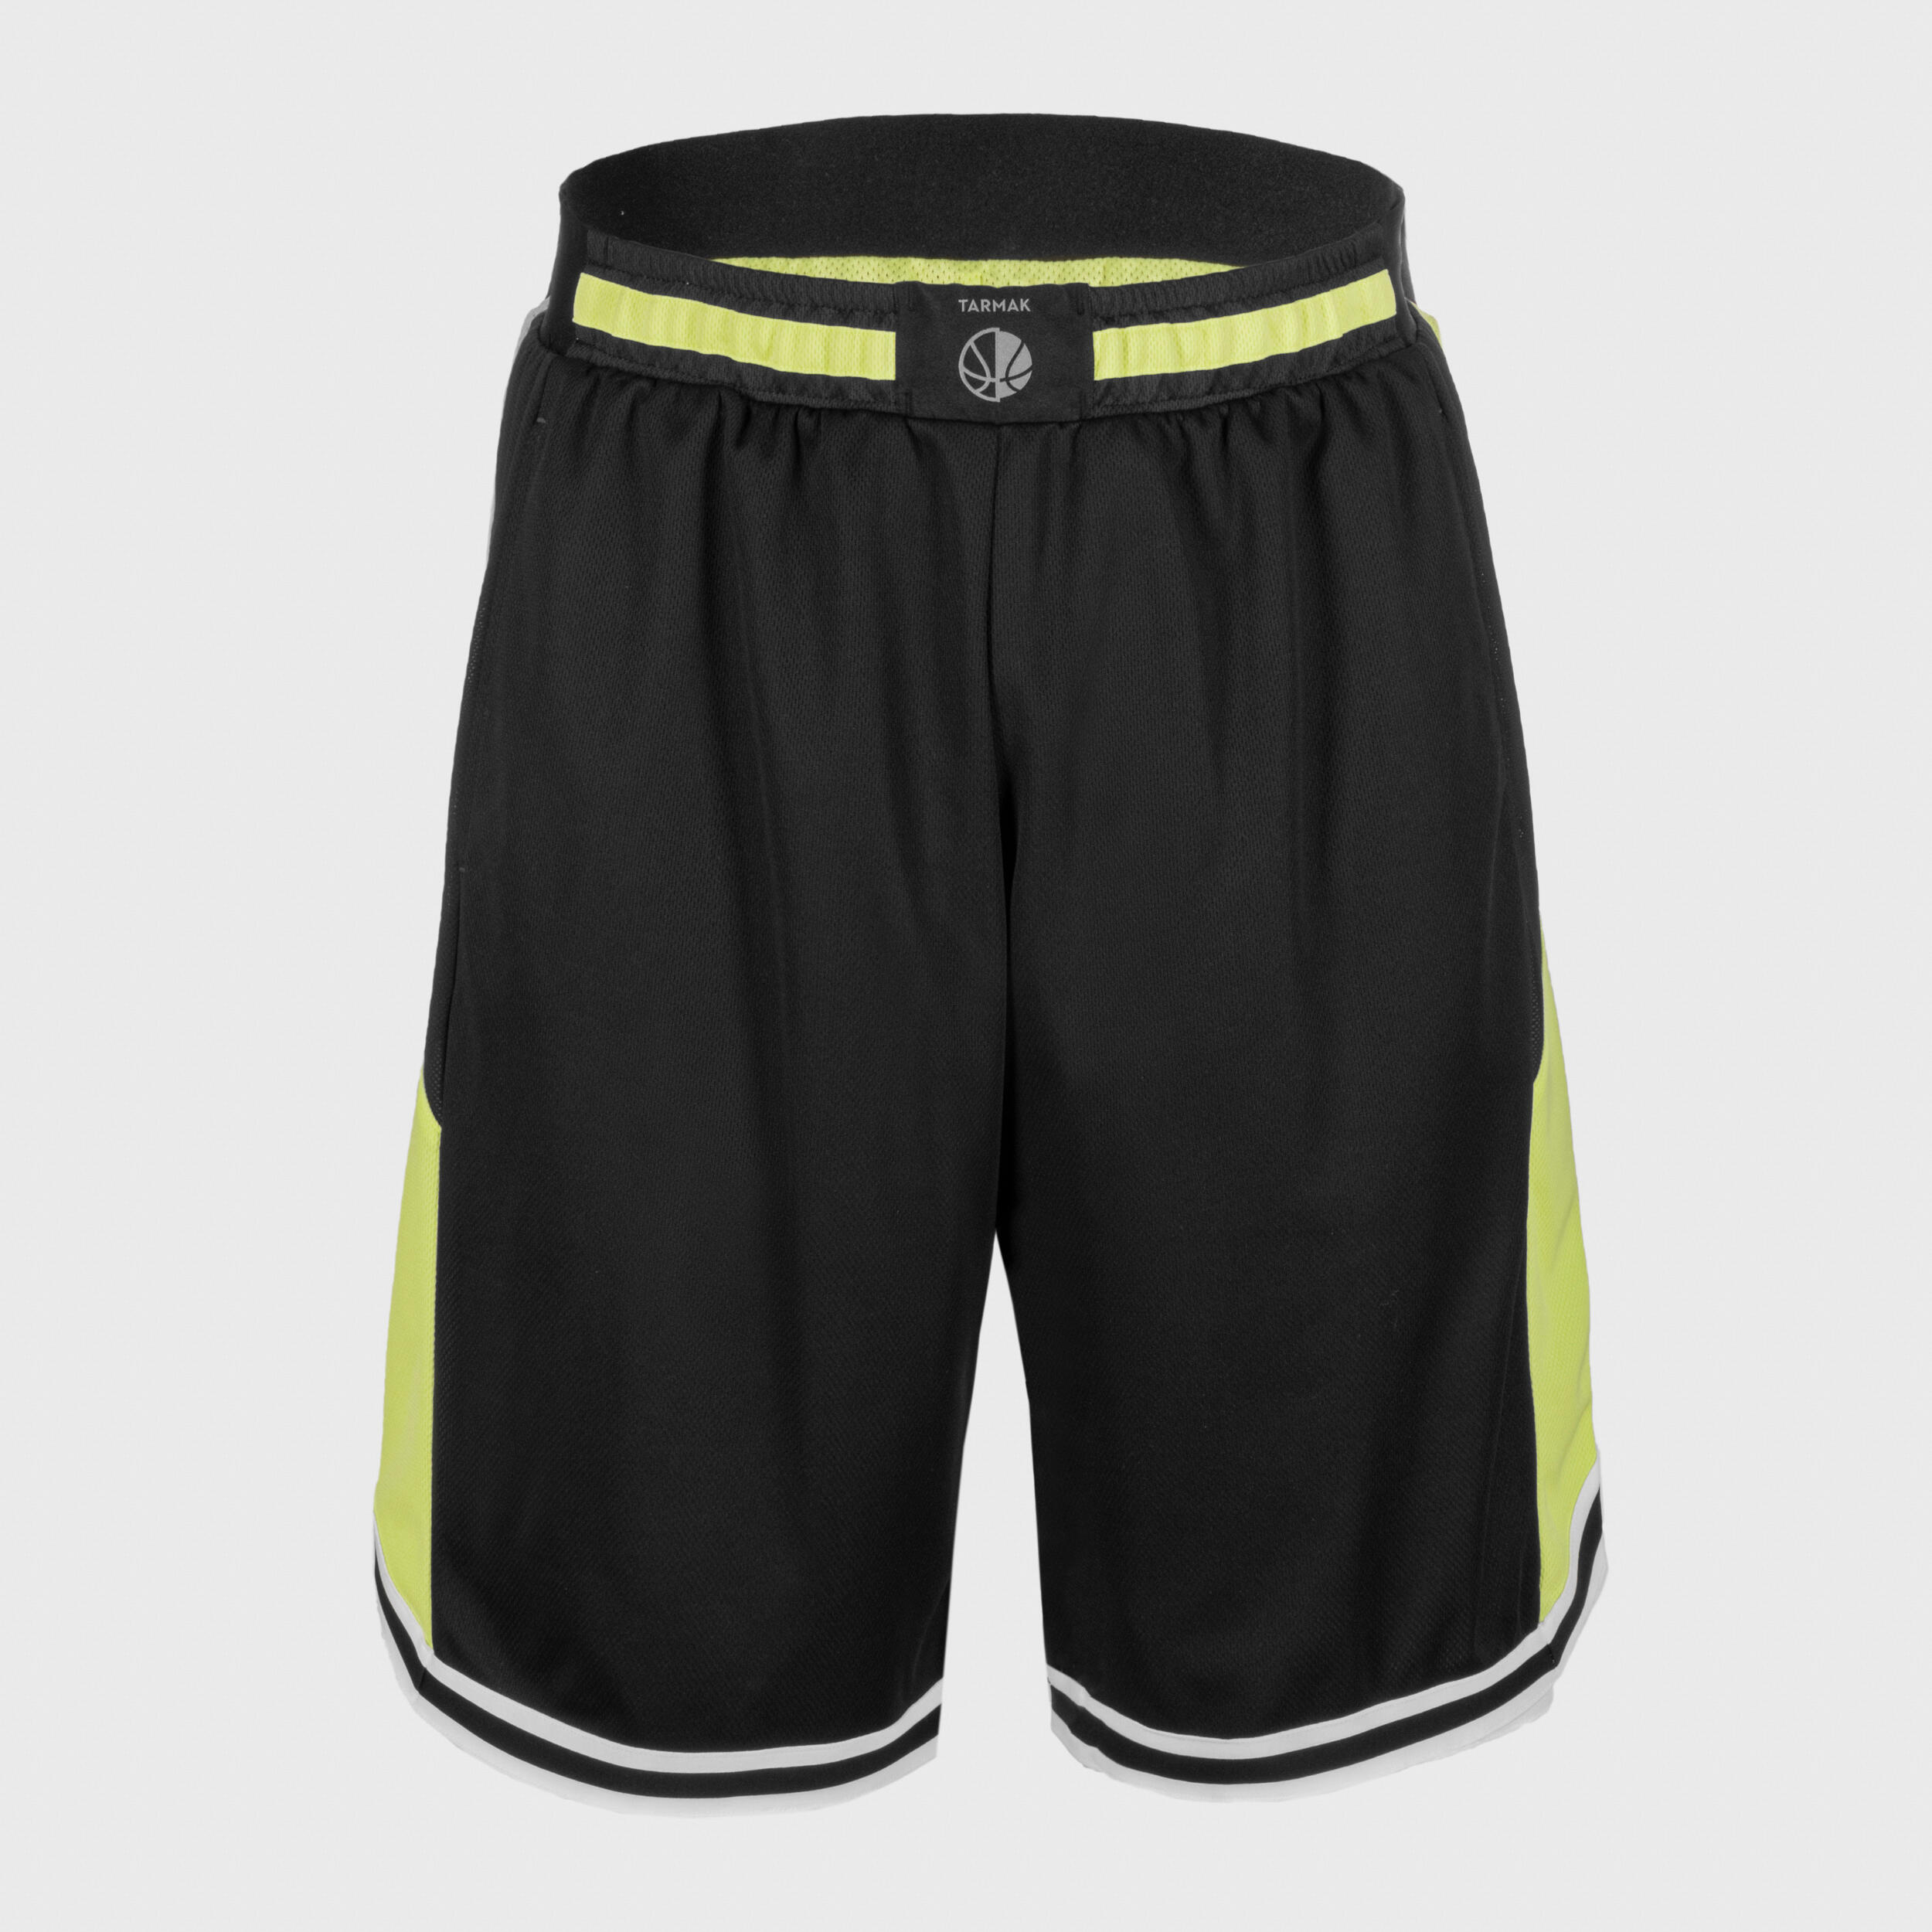 Men's/Women's Reversible Basketball Shorts SH500R - Lemon